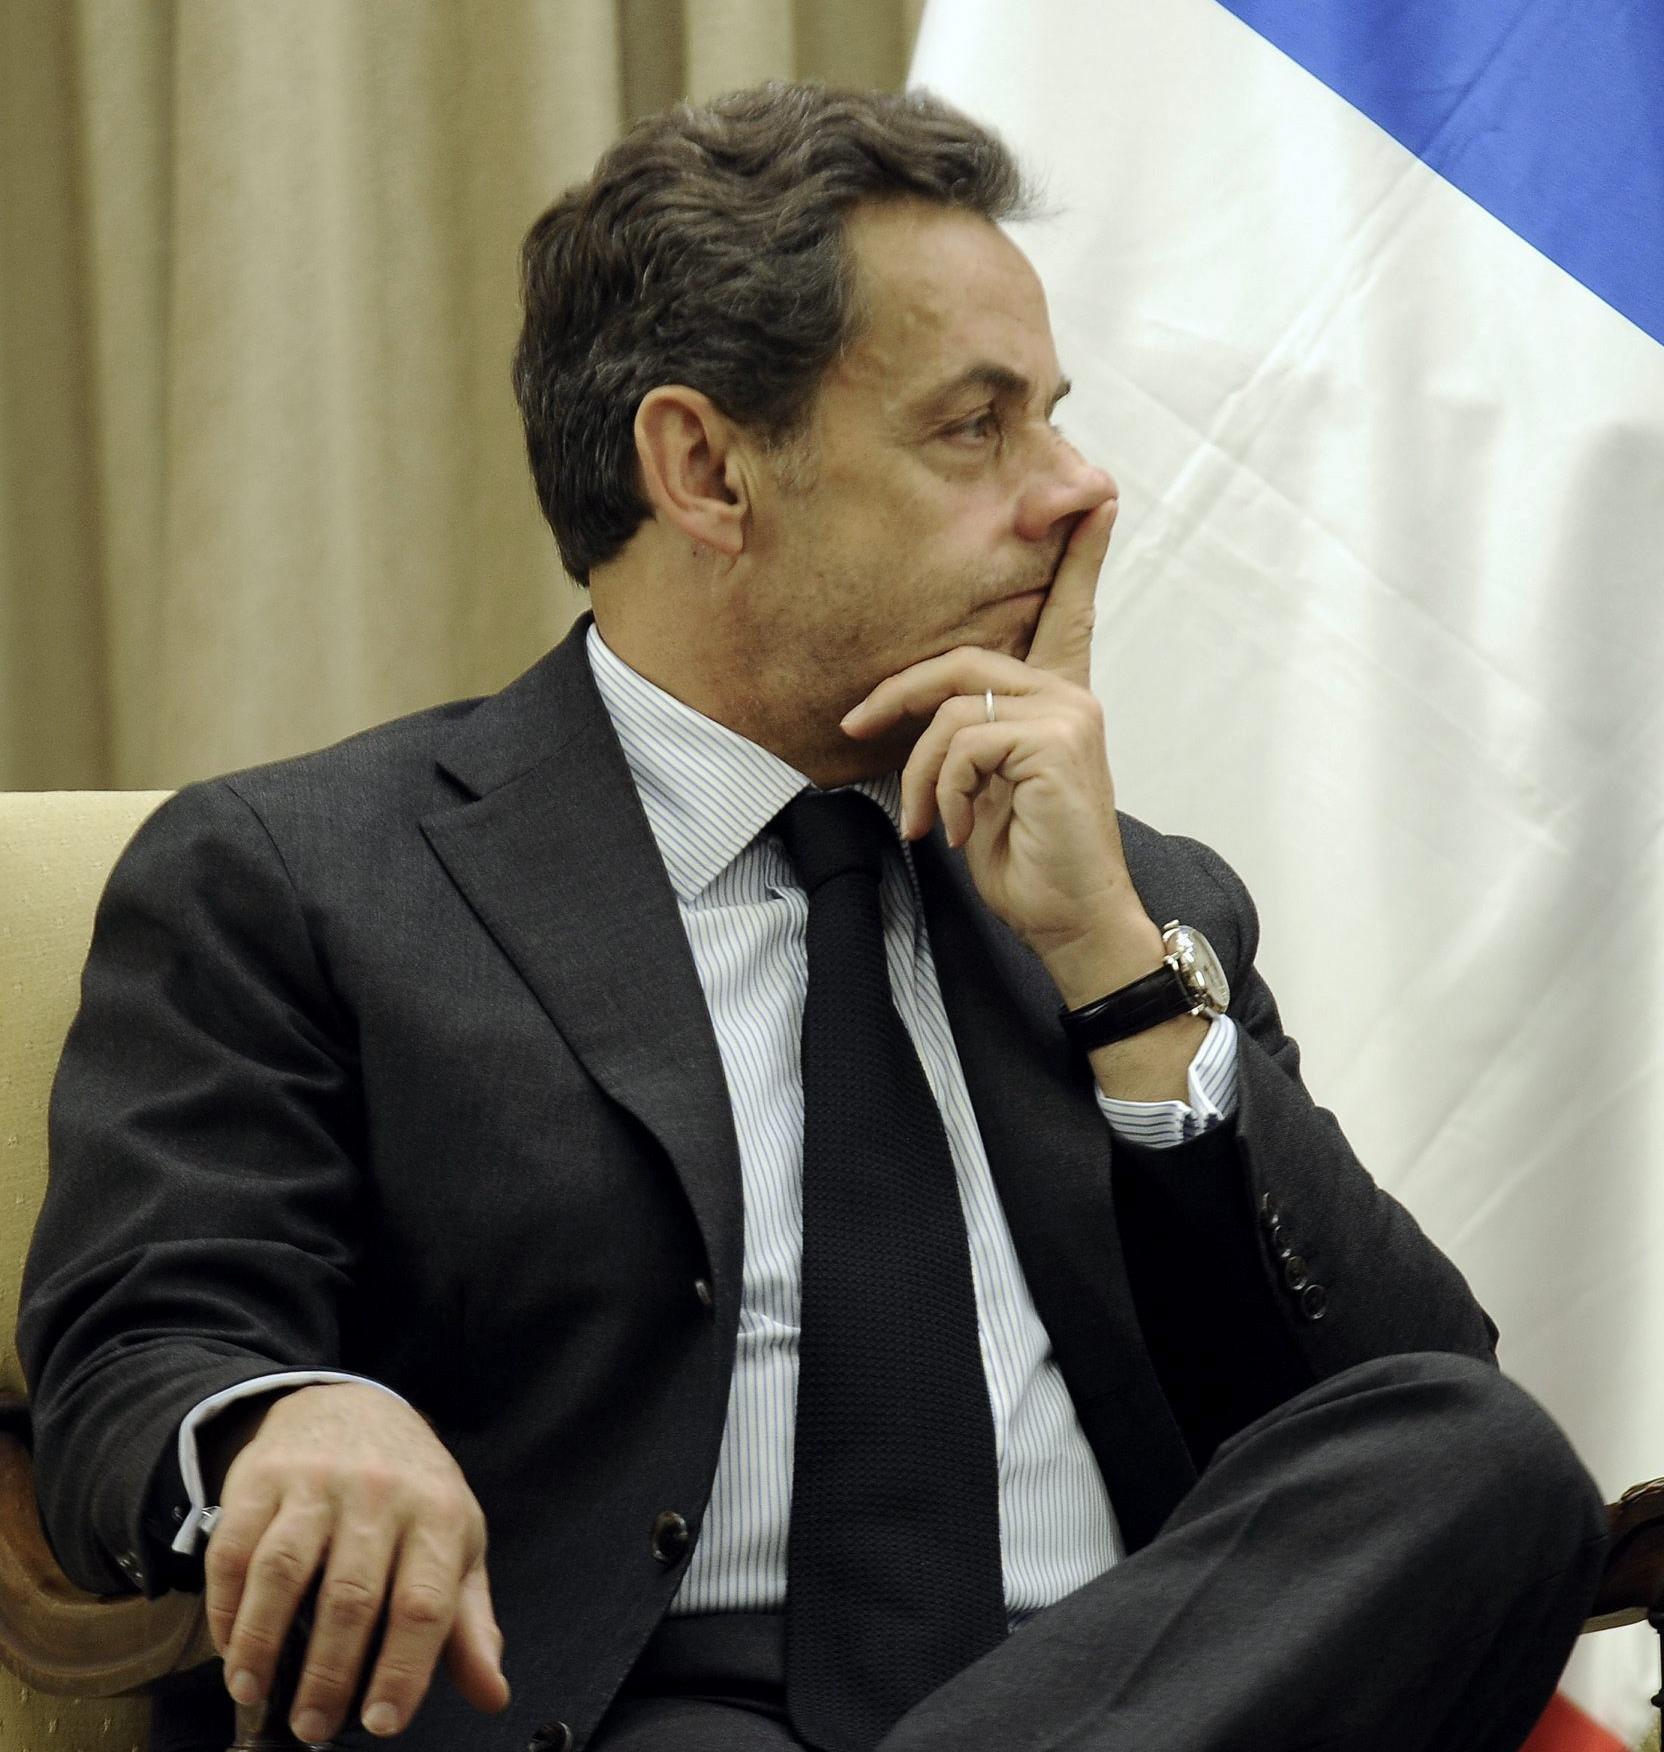 Gilbert Azibert, el juez acusado de ayudar a Sarkozy, intenta suicidarse